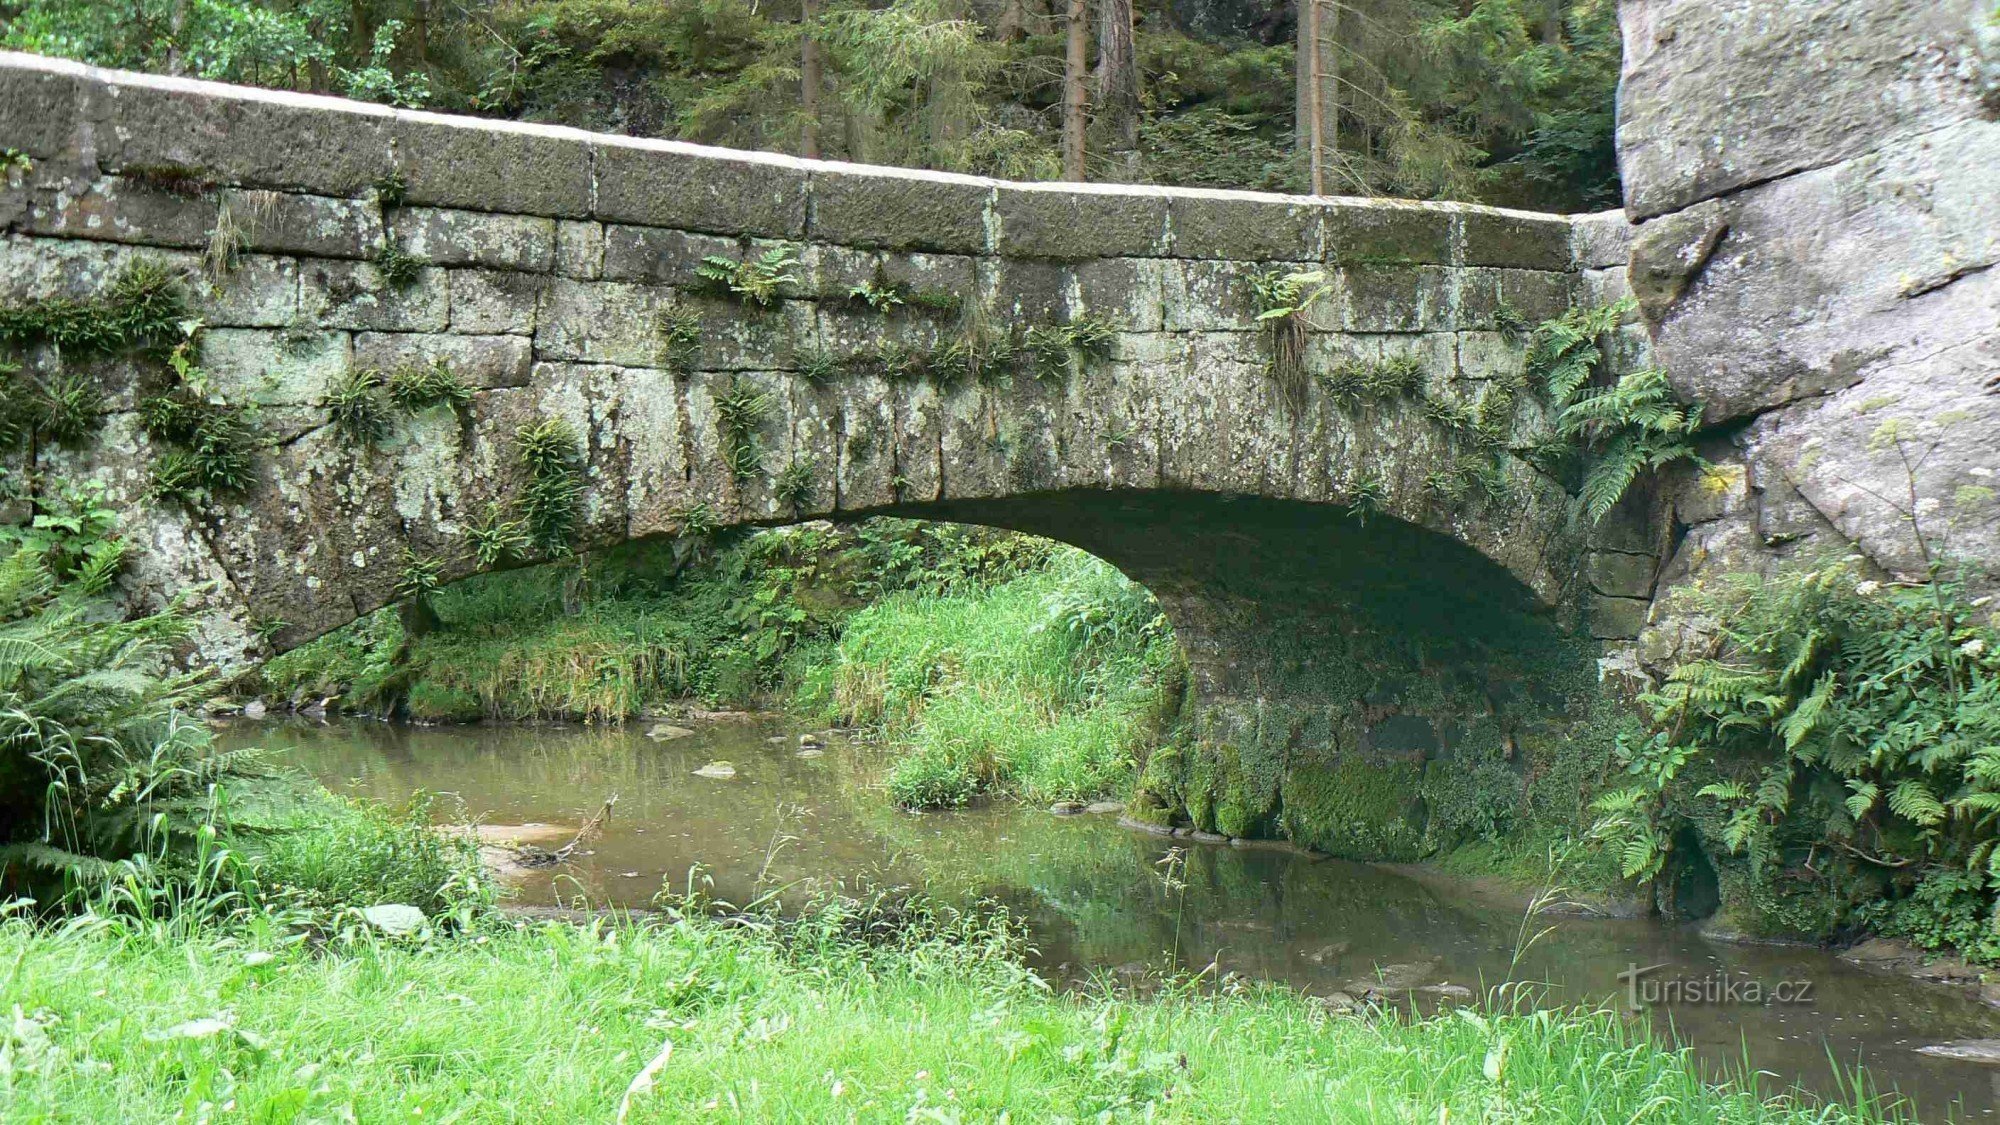 Podsemínski most